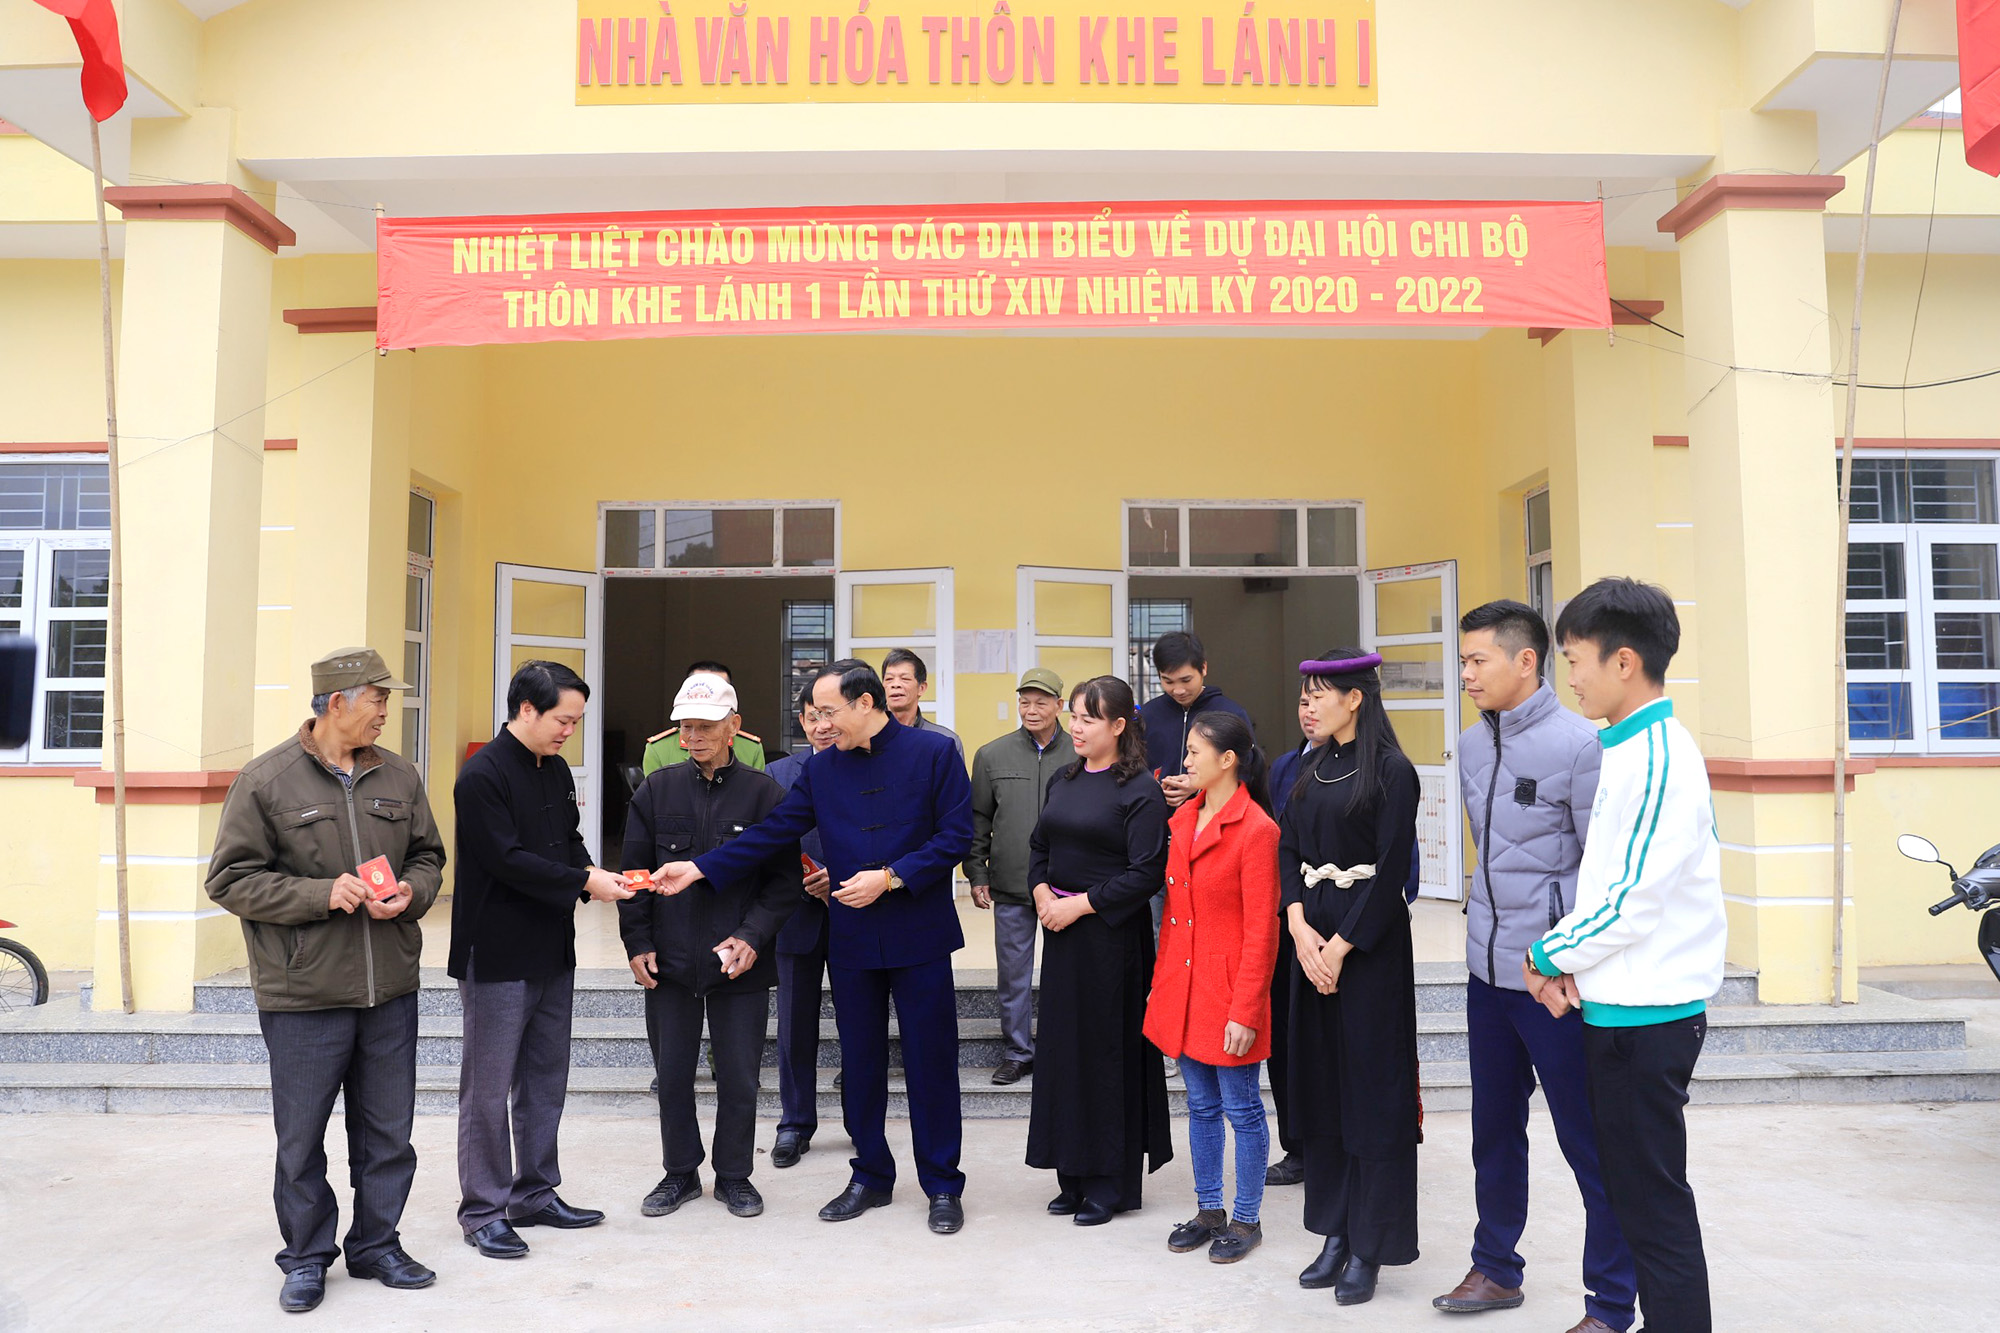 Lãnh đạo huyện Bình Liêu trò chuyện với đại biểu tham dự Đại hội chi bộ thôn Khe Lánh 1, xã Vô Ngại.